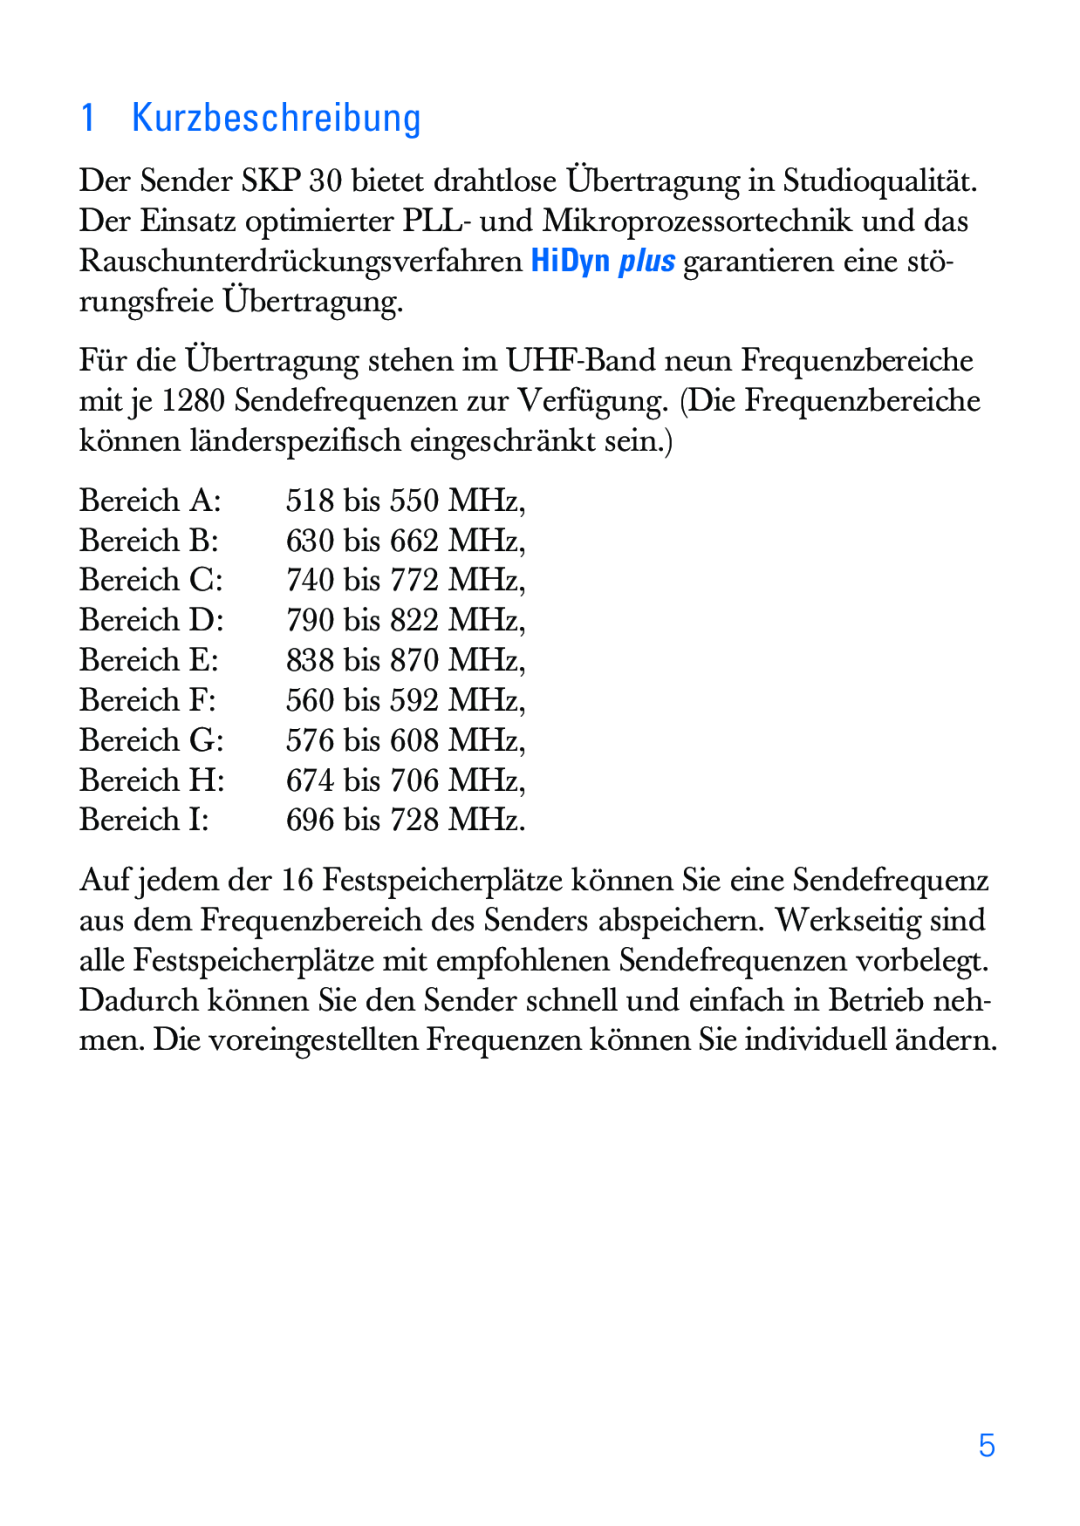 Sennheiser SKP 30 manual Kurzbeschreibung 